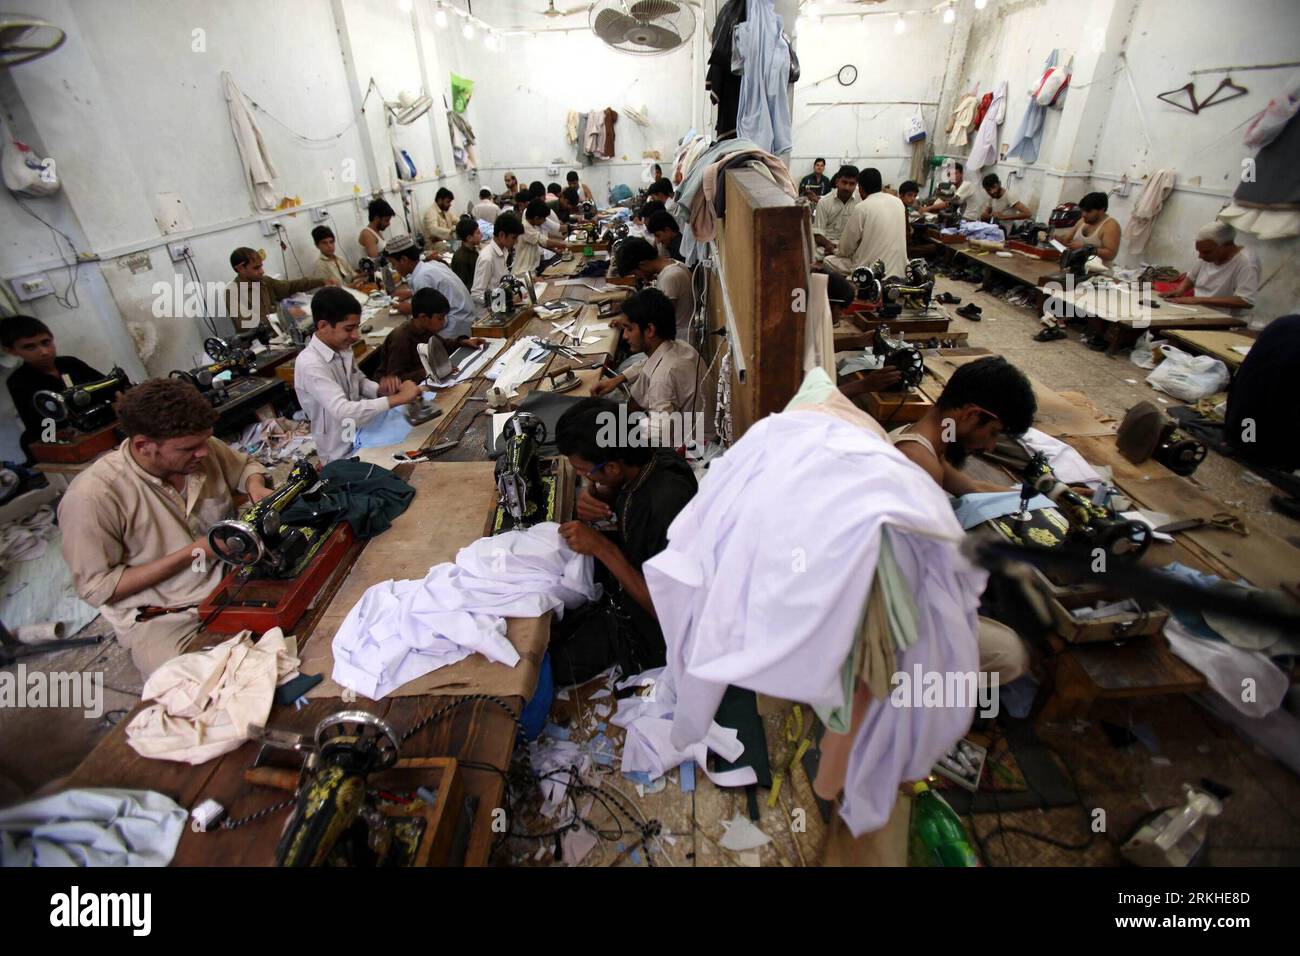 Bildnummer: 55810253 Datum: 22.08.2011 Copyright: imago/Xinhua (110822) -- PESHAWAR, 22. August 2011 (Xinhua) -- Mitarbeiter einer lokalen Textilfabrik nähen am 22. August 2011 Kleidung im nordwestpakistanischen Peshawar. Angesichts einer chronischen Energiekrise in Pakistan stimmen viele Textilhersteller im Land mit den Füßen ab und verlegen ihre Produktionsstätten nach Bangladesch. (Xinhua/Umar Qayyum)(yt) PAKISTAN-PESHAWAR-TEXTILKRISE PUBLICATIONxNOTxINxCHN Gesellschaft Wirtschaft Arbeitswelten Textilindustrie Näherei Nähen Nähmaschine Mann xda x0x 2011 quer Bildnummer 55810253 Datum 22 08 Stockfoto